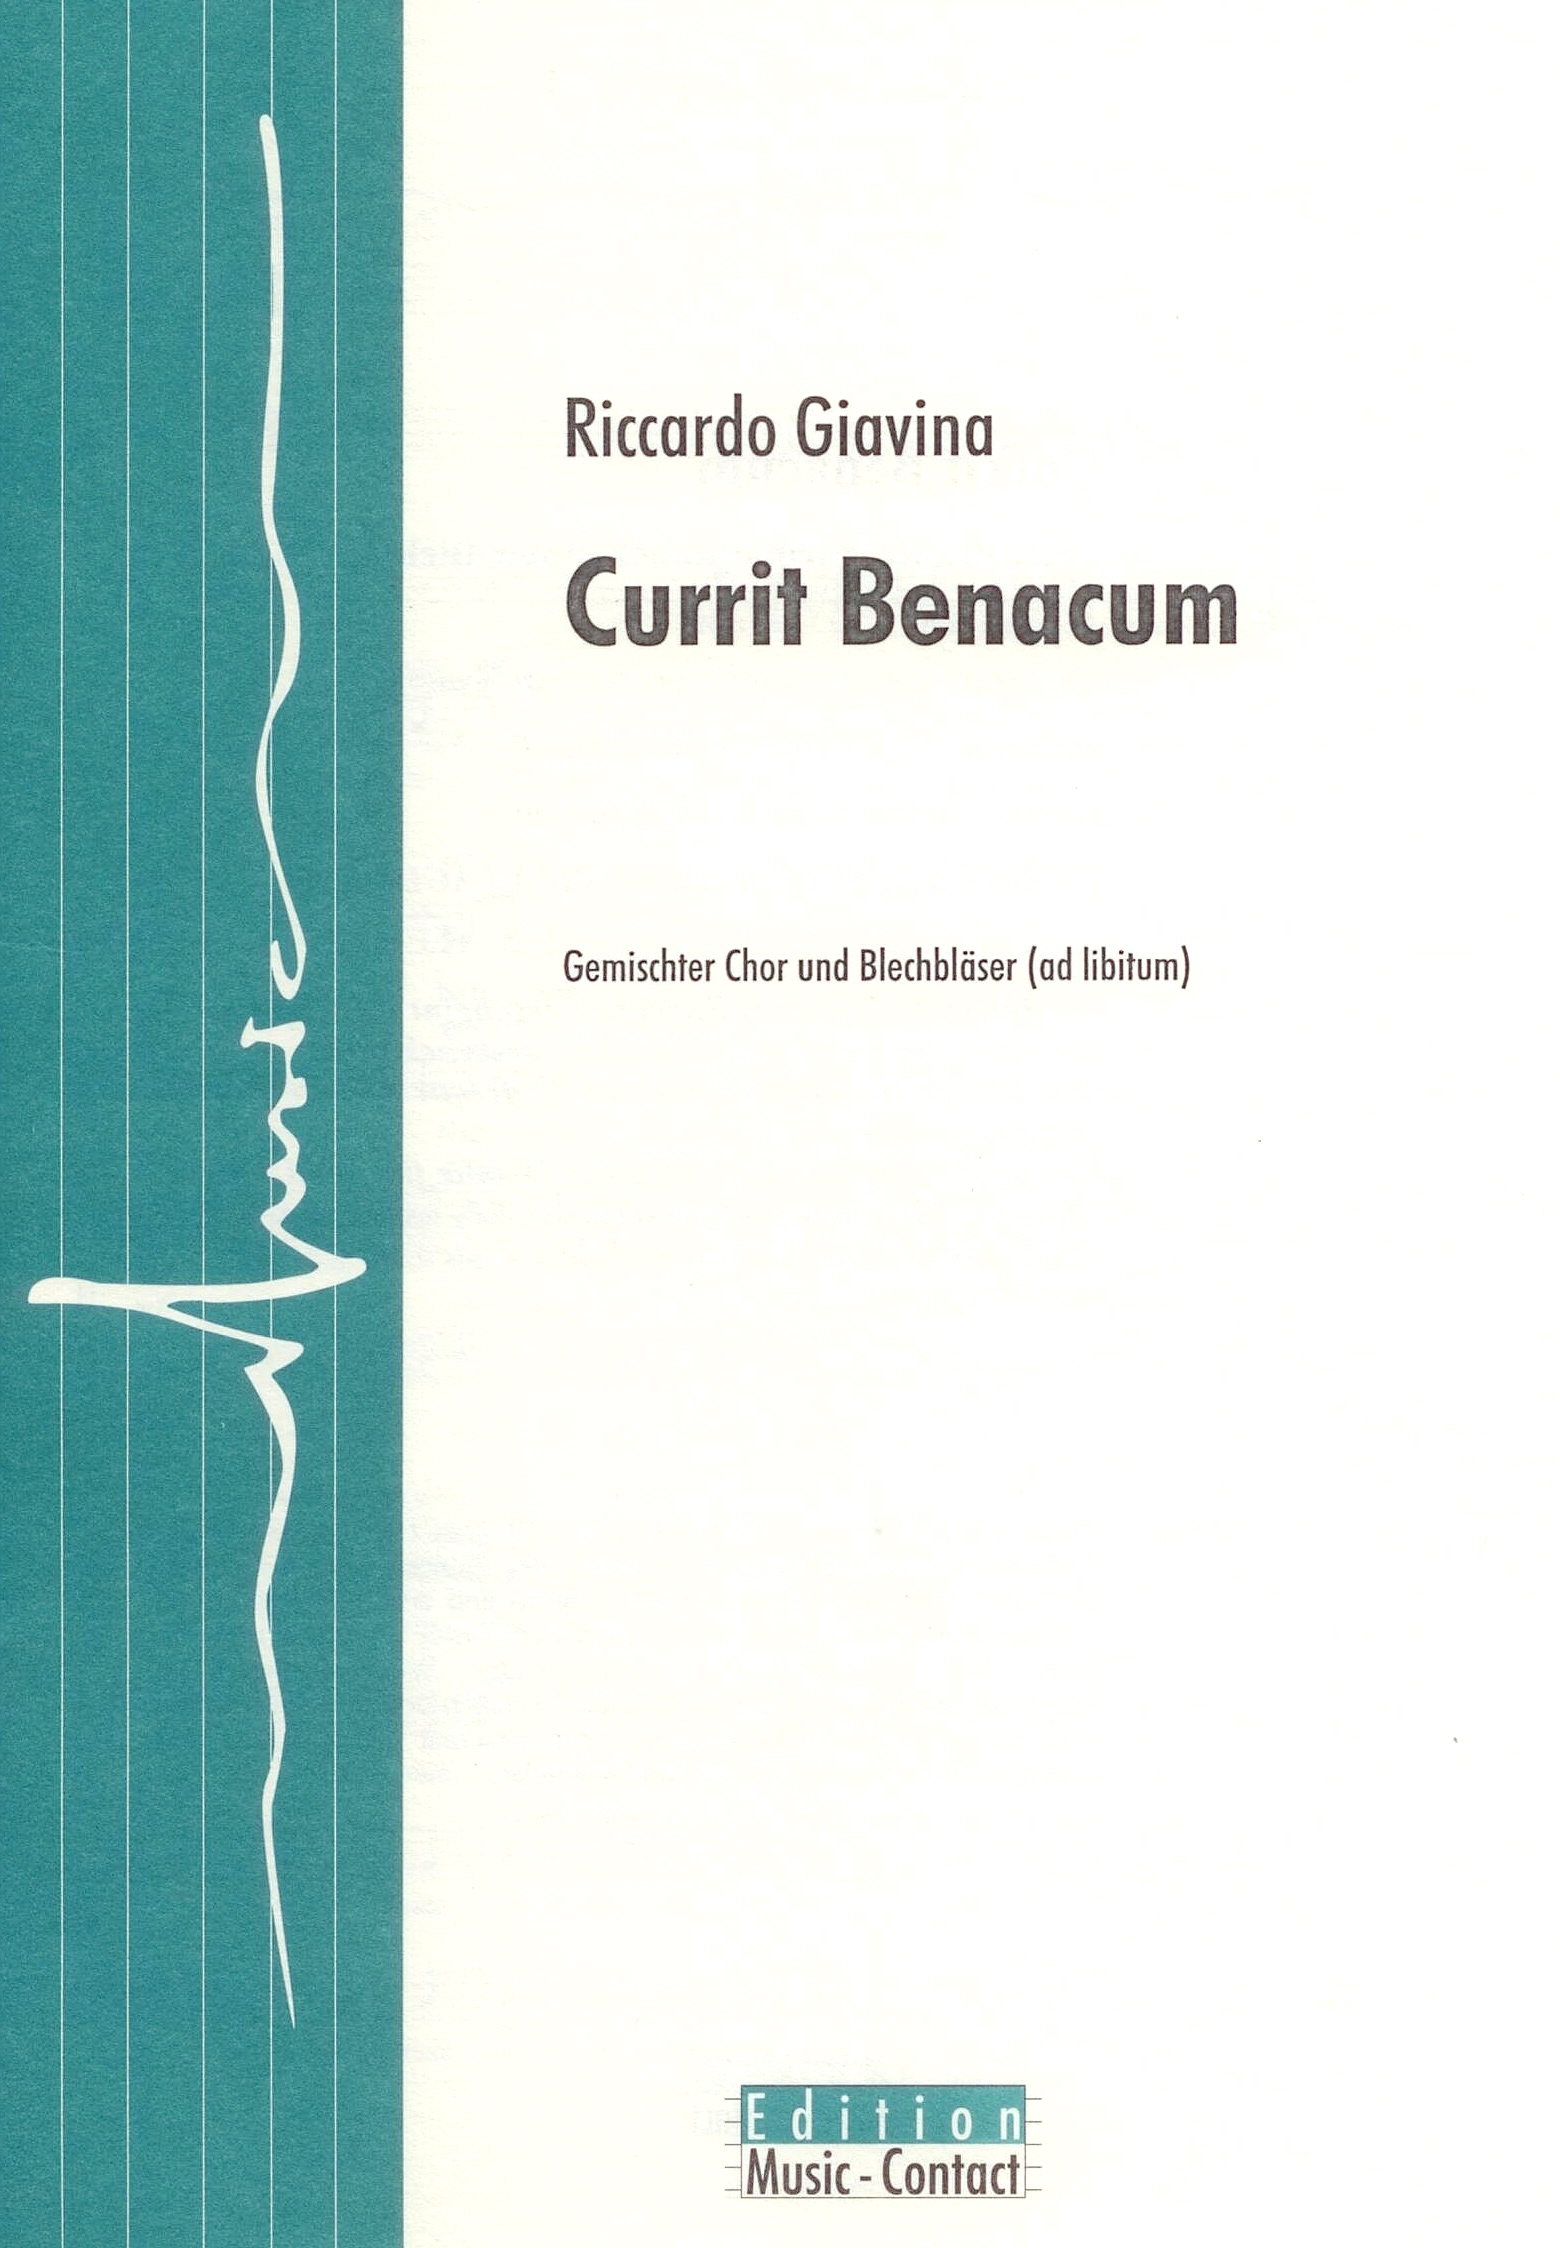 Currit Benacum